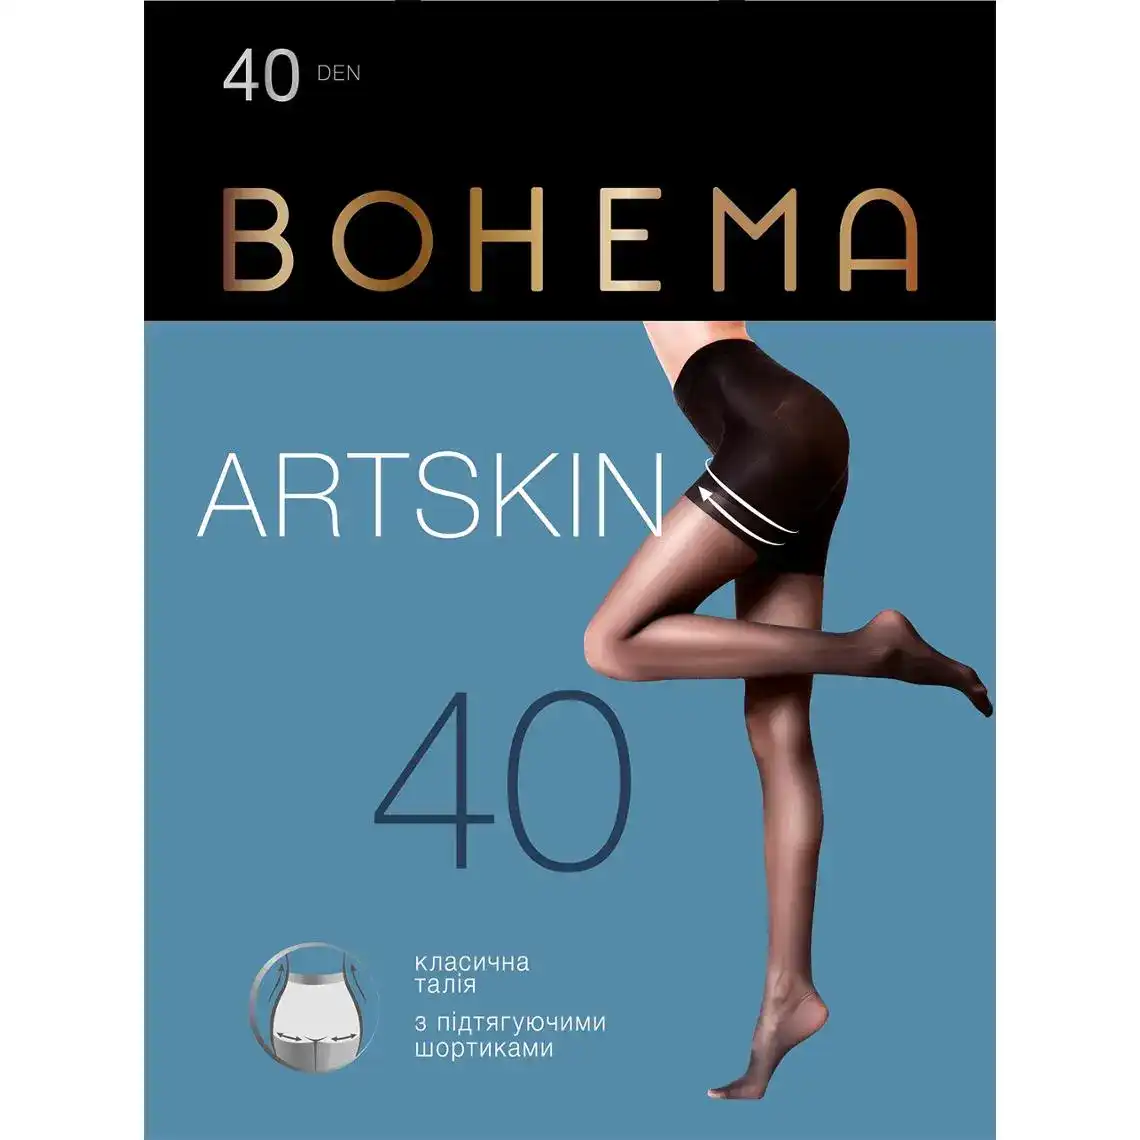 Колготи жіночі BOHEMA Artskin з підтягуючими шортиками 40 den р.4 натуральний